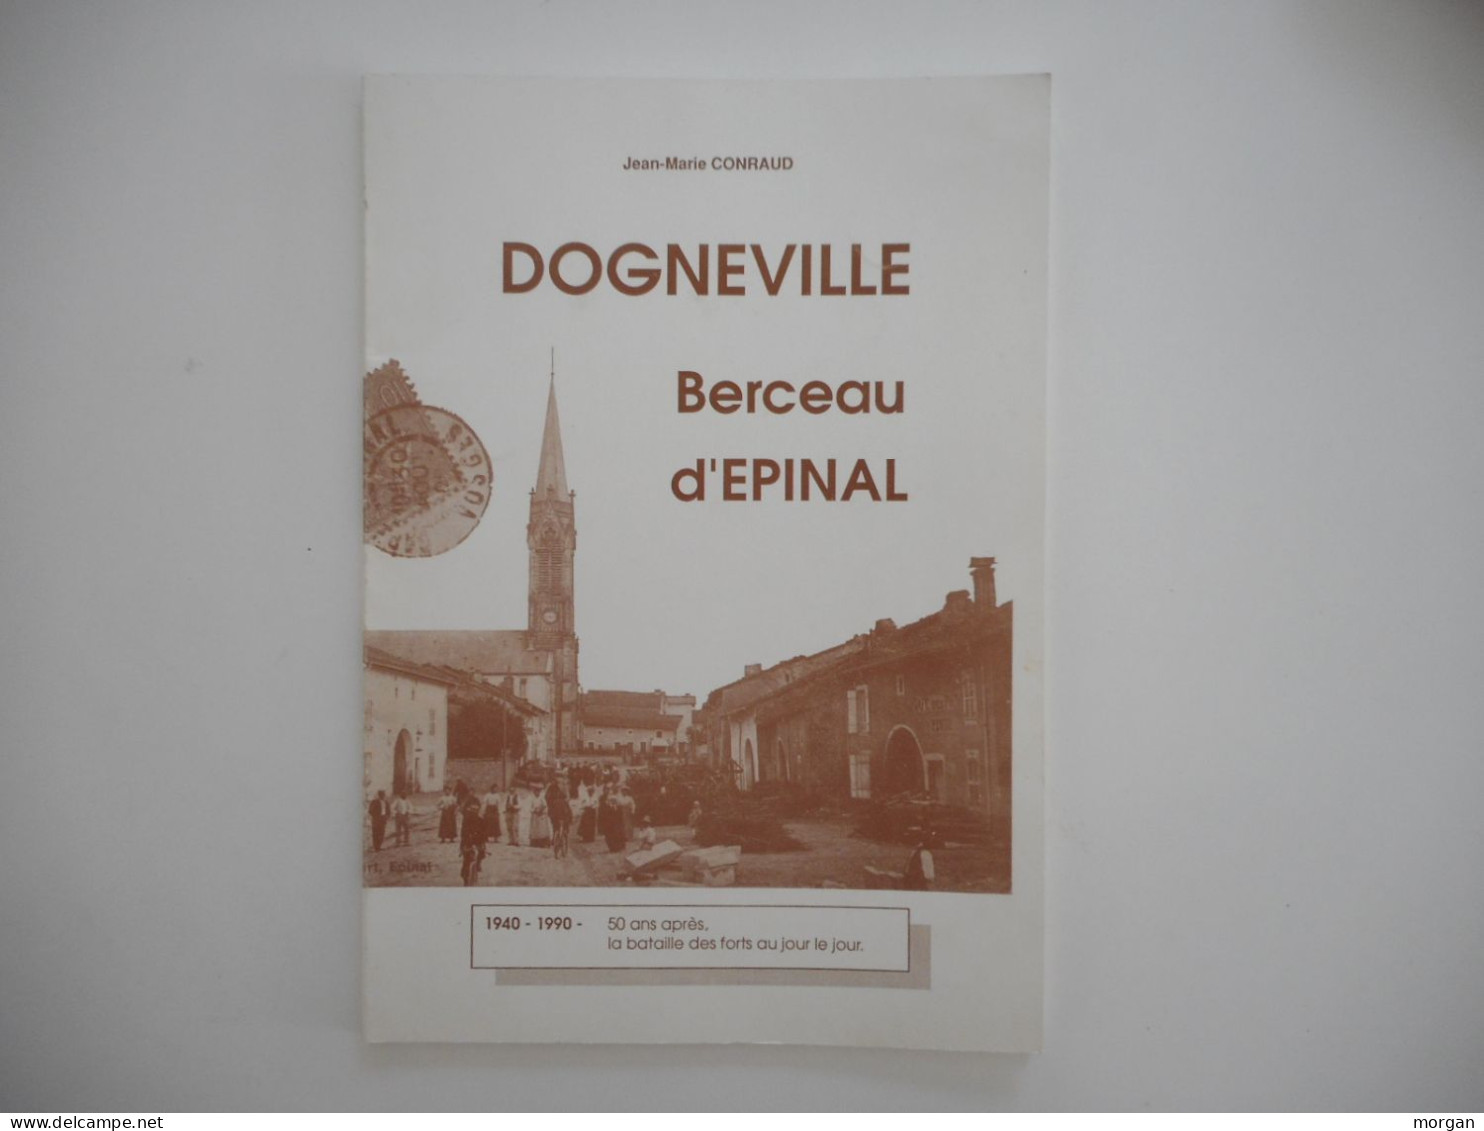 LORRAINE, VOSGES - DOGNEVILLE, BERCEAU D'EPINAL, 1990 JEAN MARIE CONRAUD - Lorraine - Vosges